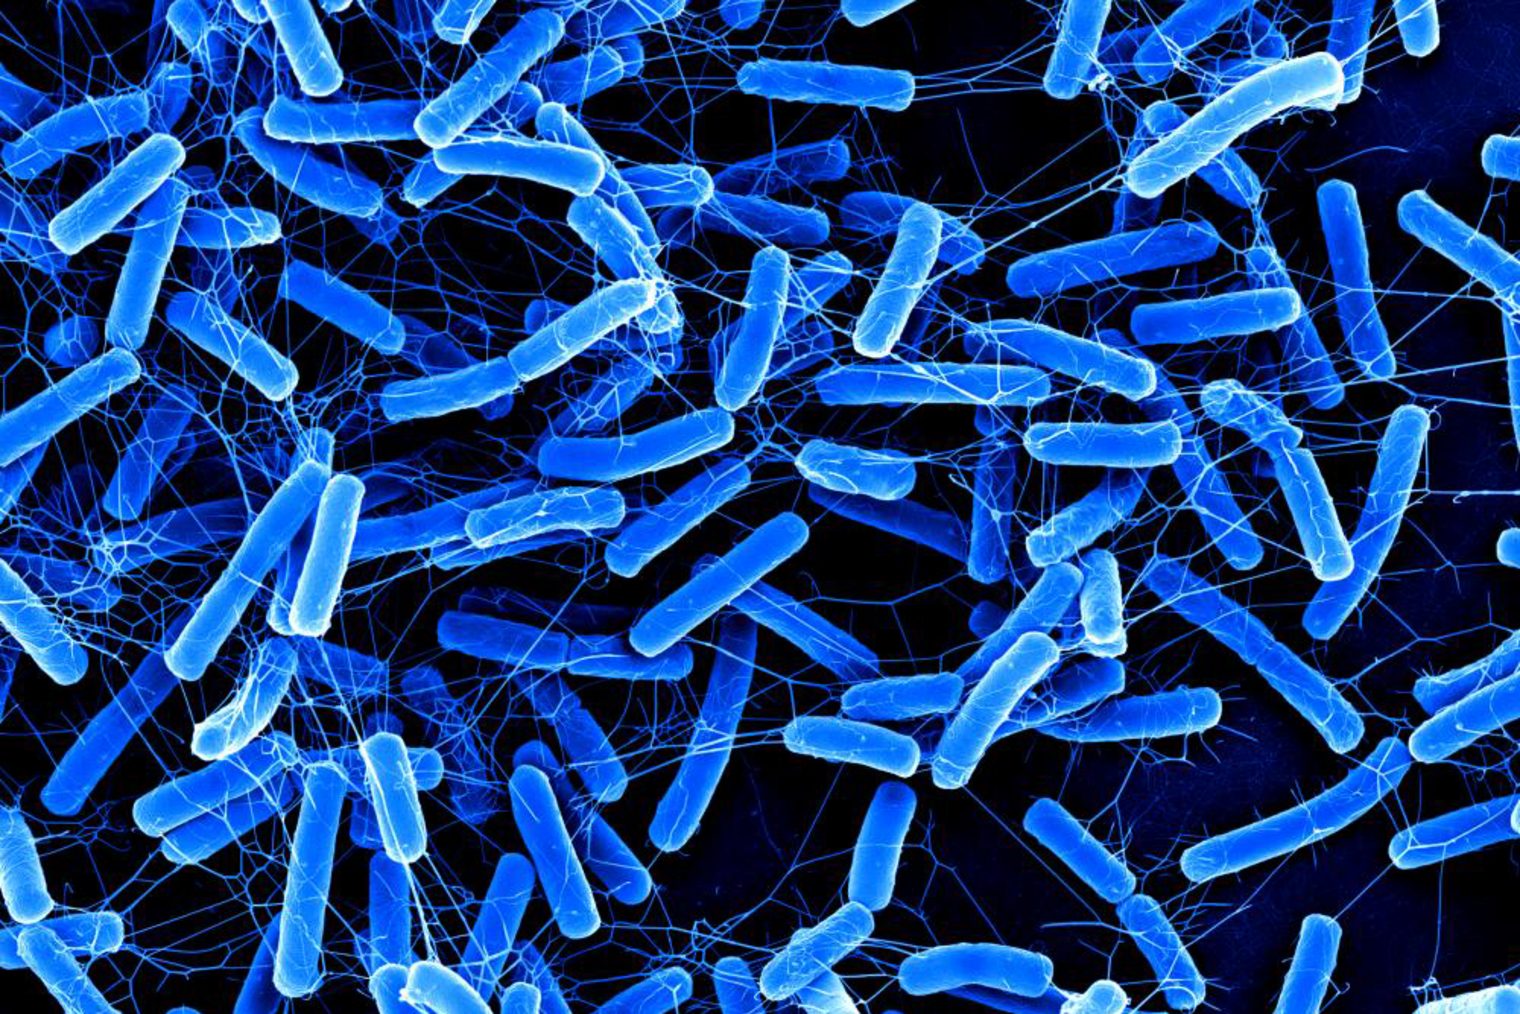 Blue rod-like bacteria